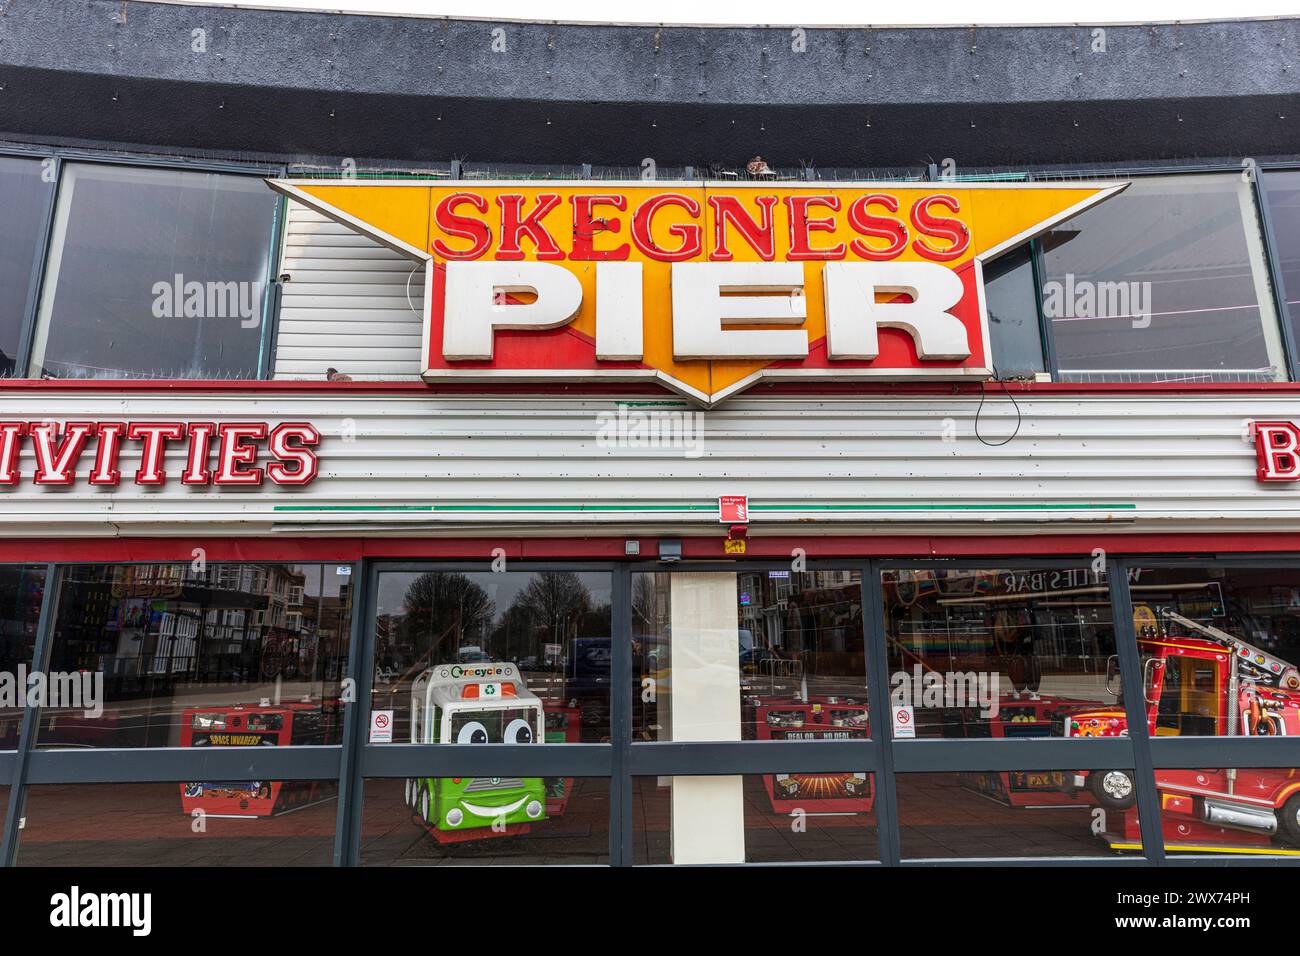 Skegness Pier sign, Skegness, Lincolnshire, UK, England, Skegness Pier, sign, front, arcade, amusements, Skegness amusements, sign, building, entrance Stock Photo